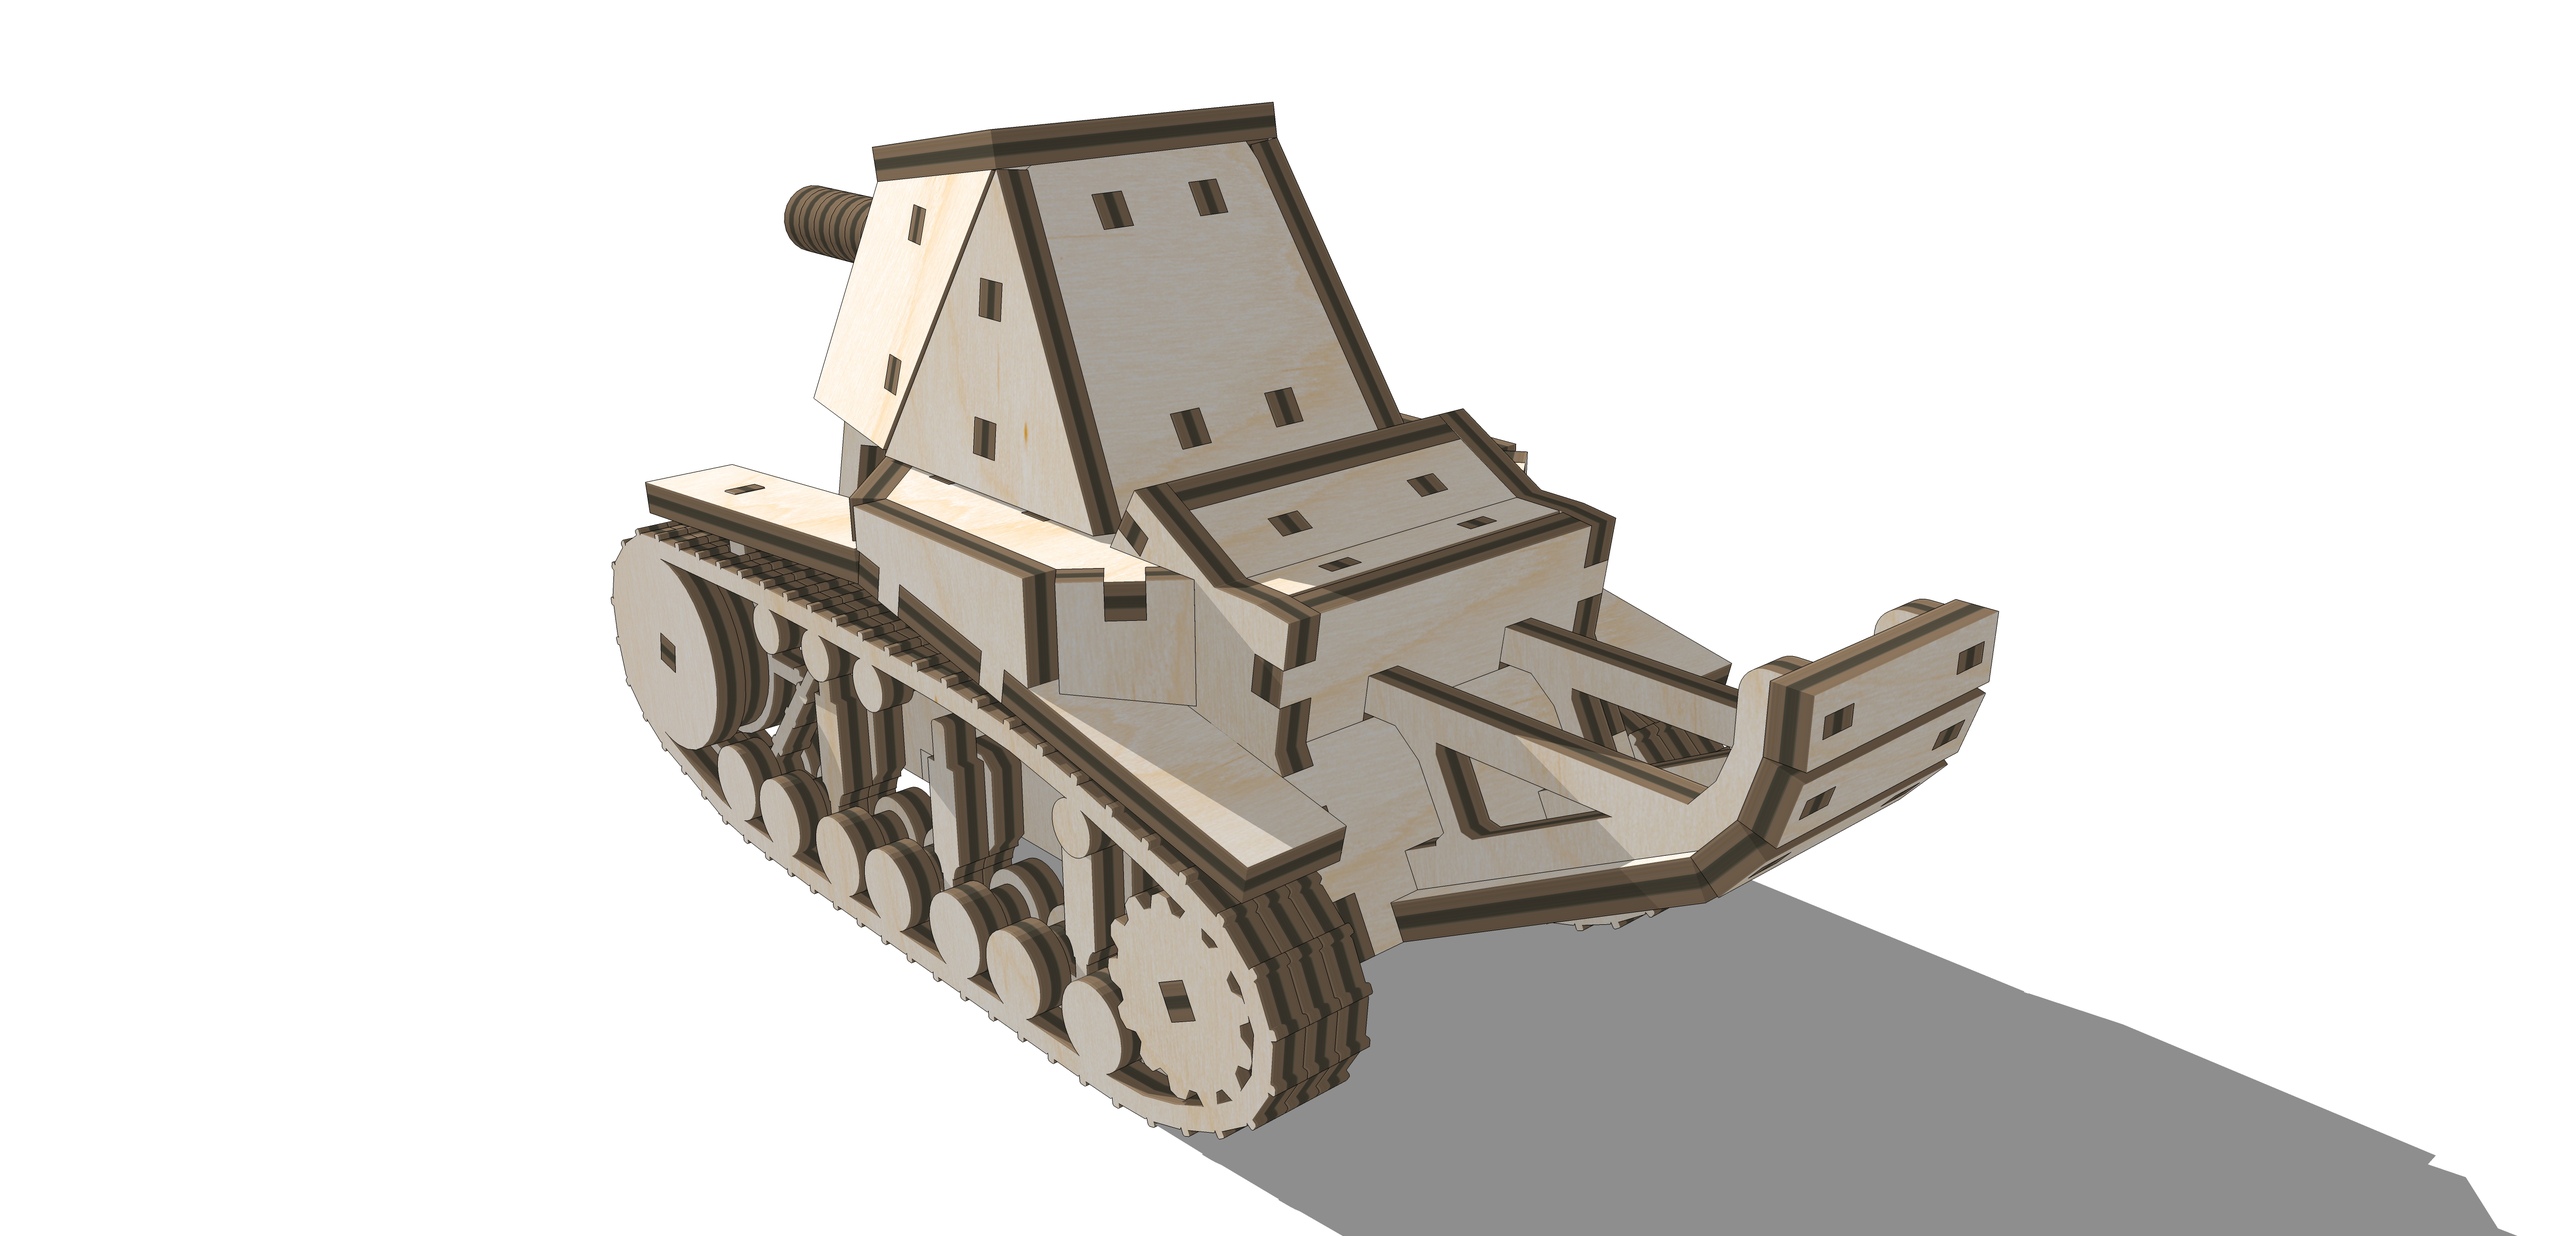 Laser Cut Tank SU-18 Wooden 3D Puzzle Free Vector